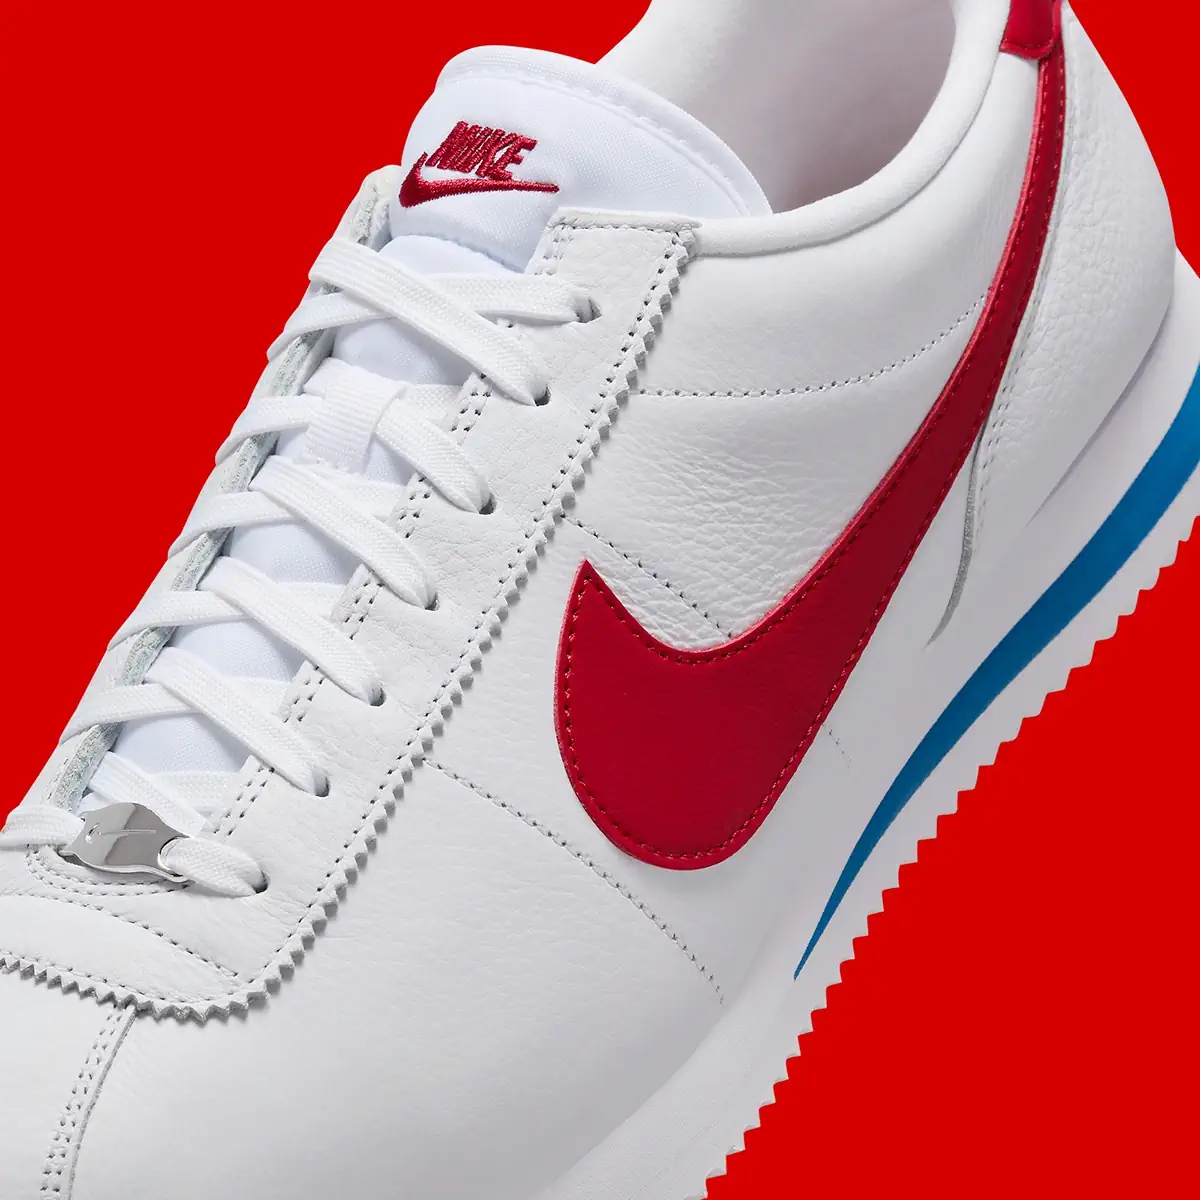 La Nike Cortez “Forrest Gump” sort aujourd'hui, le 8 mai